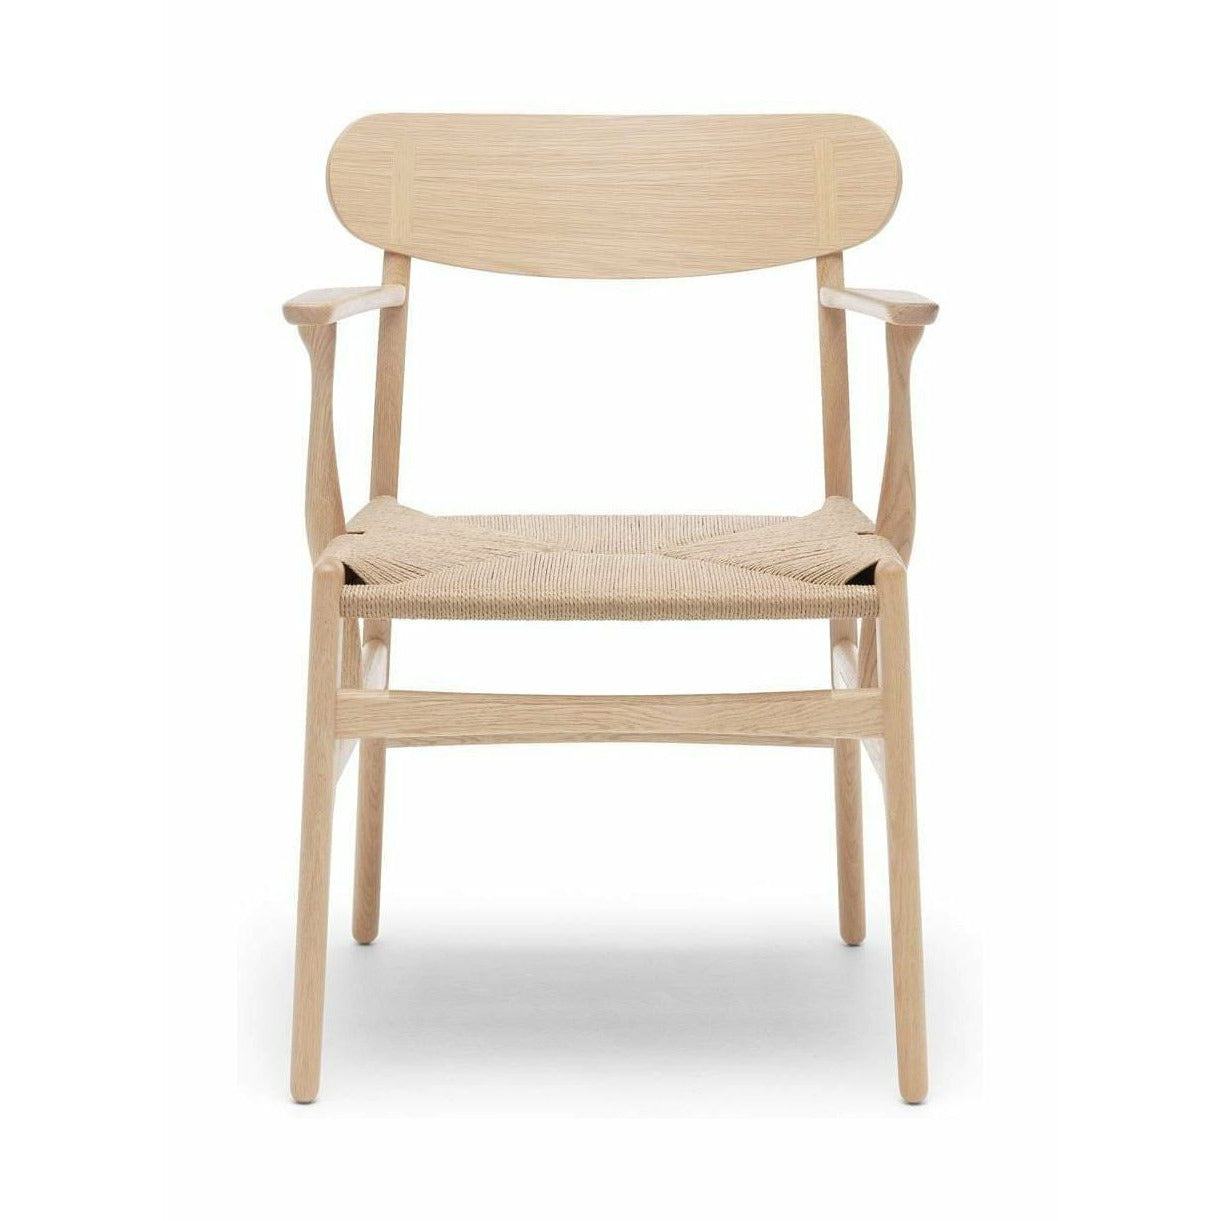 Carl Hansen CH26 -stol, ekvål/naturlig sladd